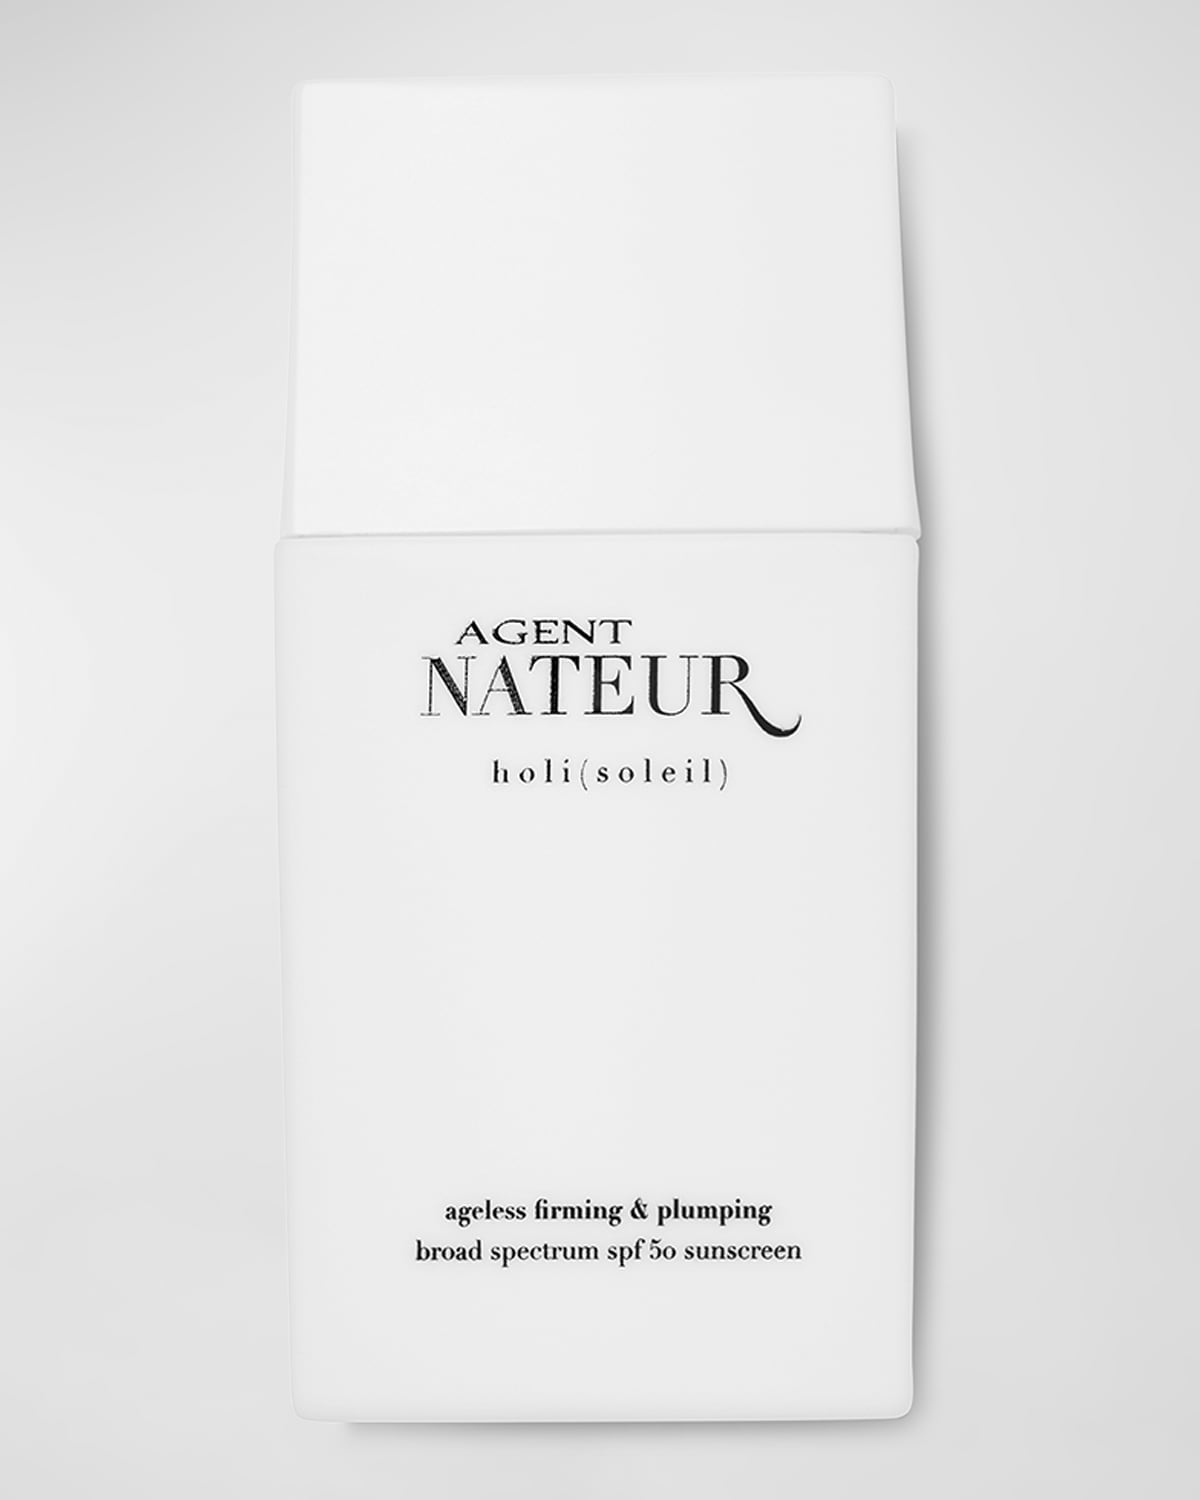 Agent Nateur Holi (soleil) Ageless Firming & Plumping Sunscreen, Spf 50